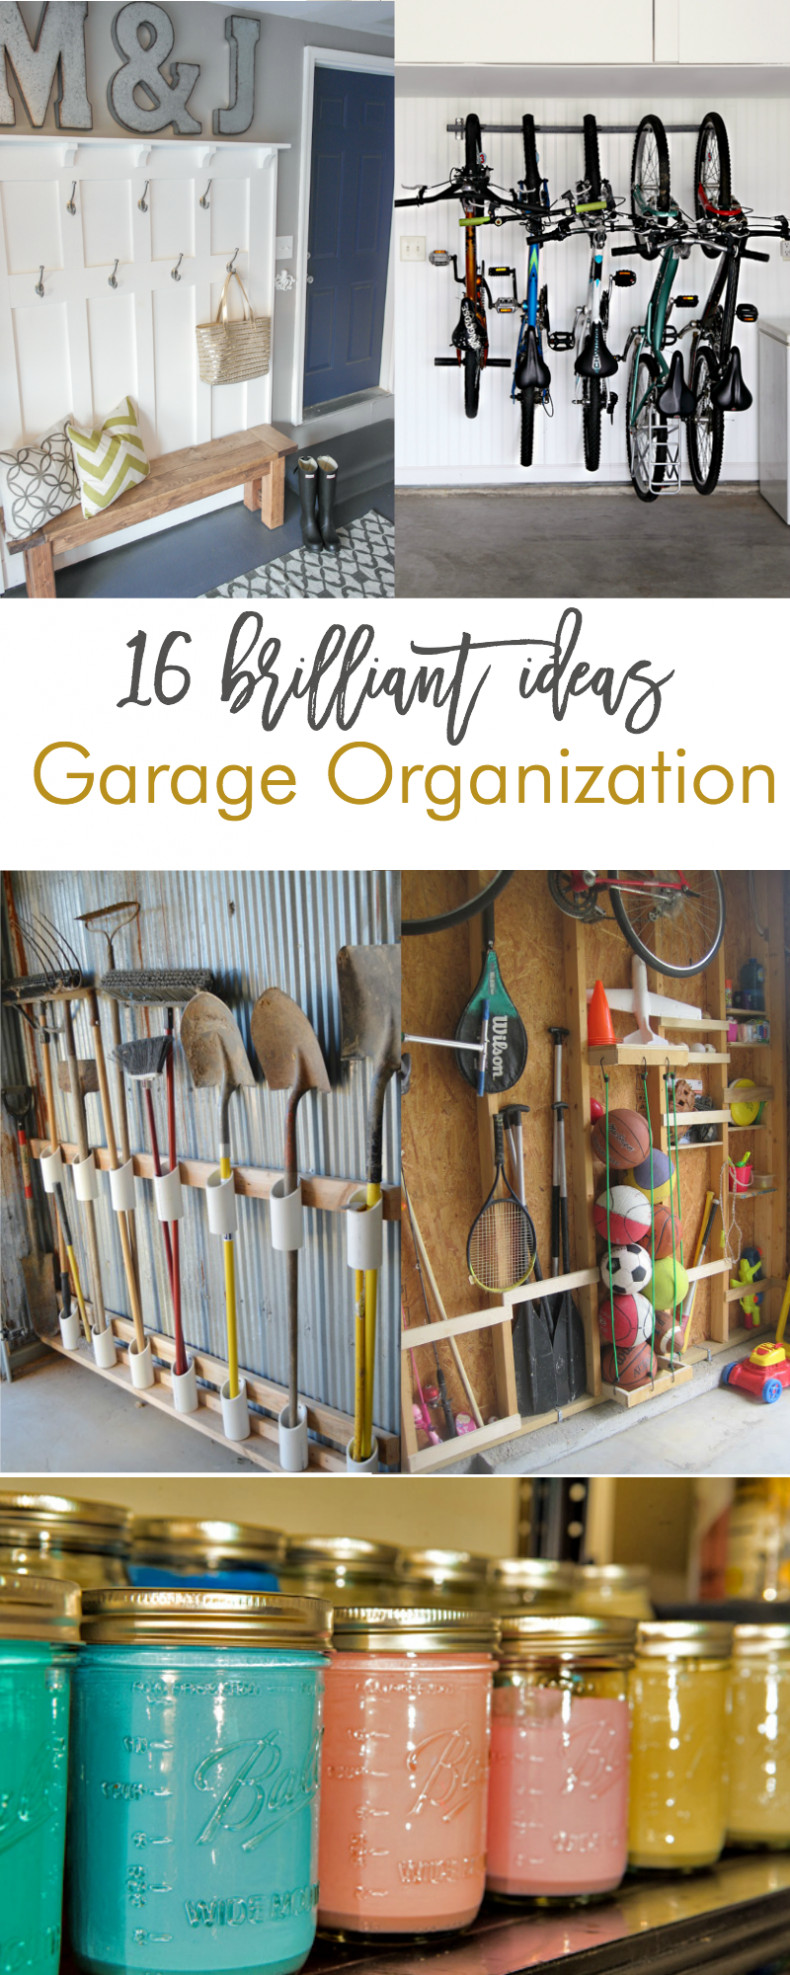 Best ideas about DIY Garage Organizers
. Save or Pin 16 Brilliant DIY Garage Organization Ideas Now.